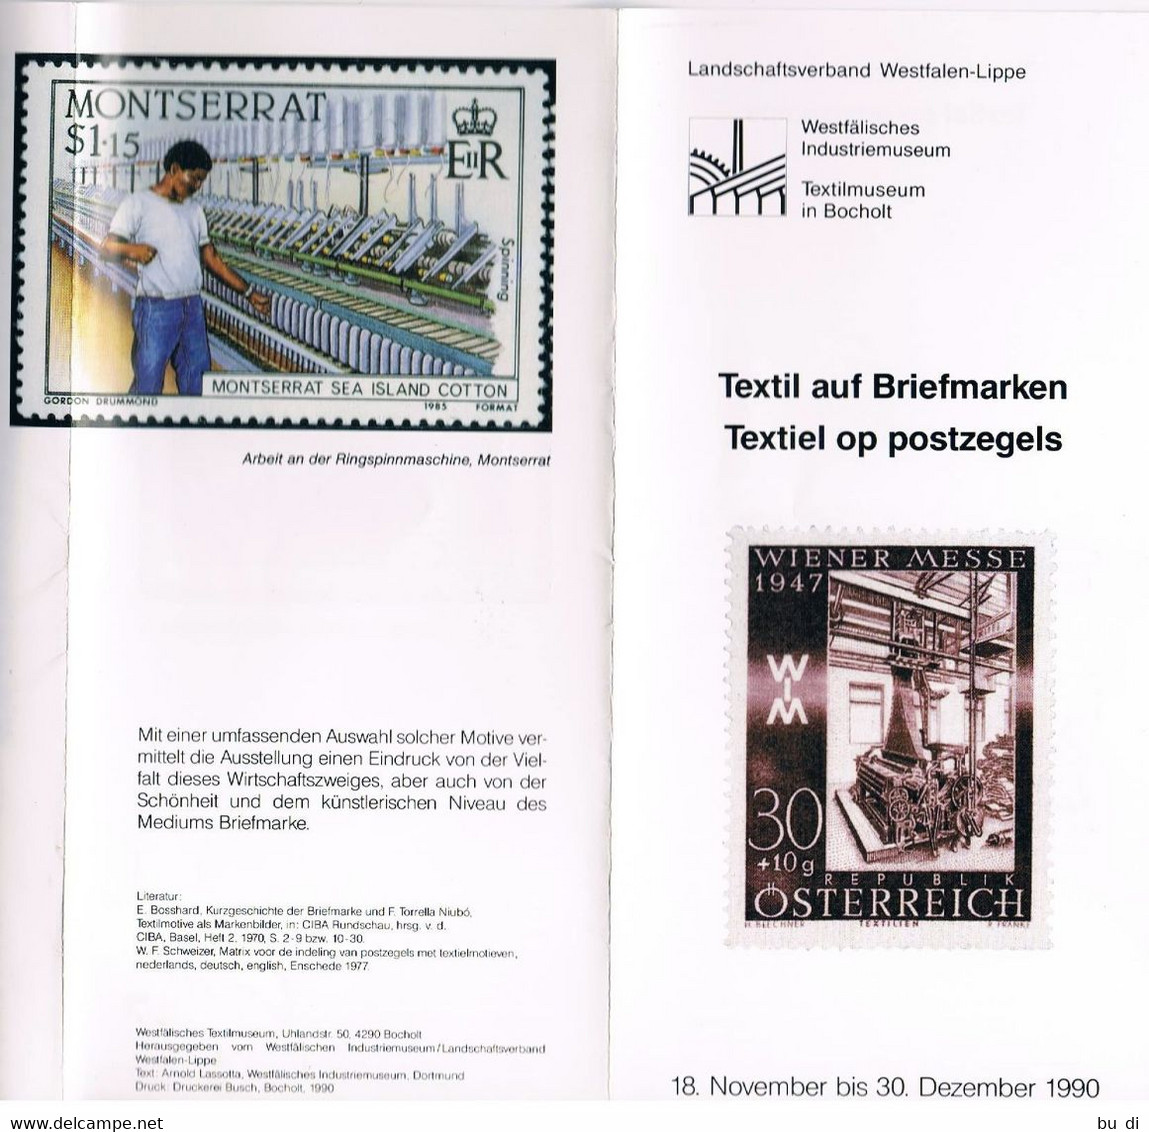 Deutschland - Flyer Zur Ausstellung Textilien Auf Briefmarken In Bocholt - Textile On Stamps - German (from 1941)